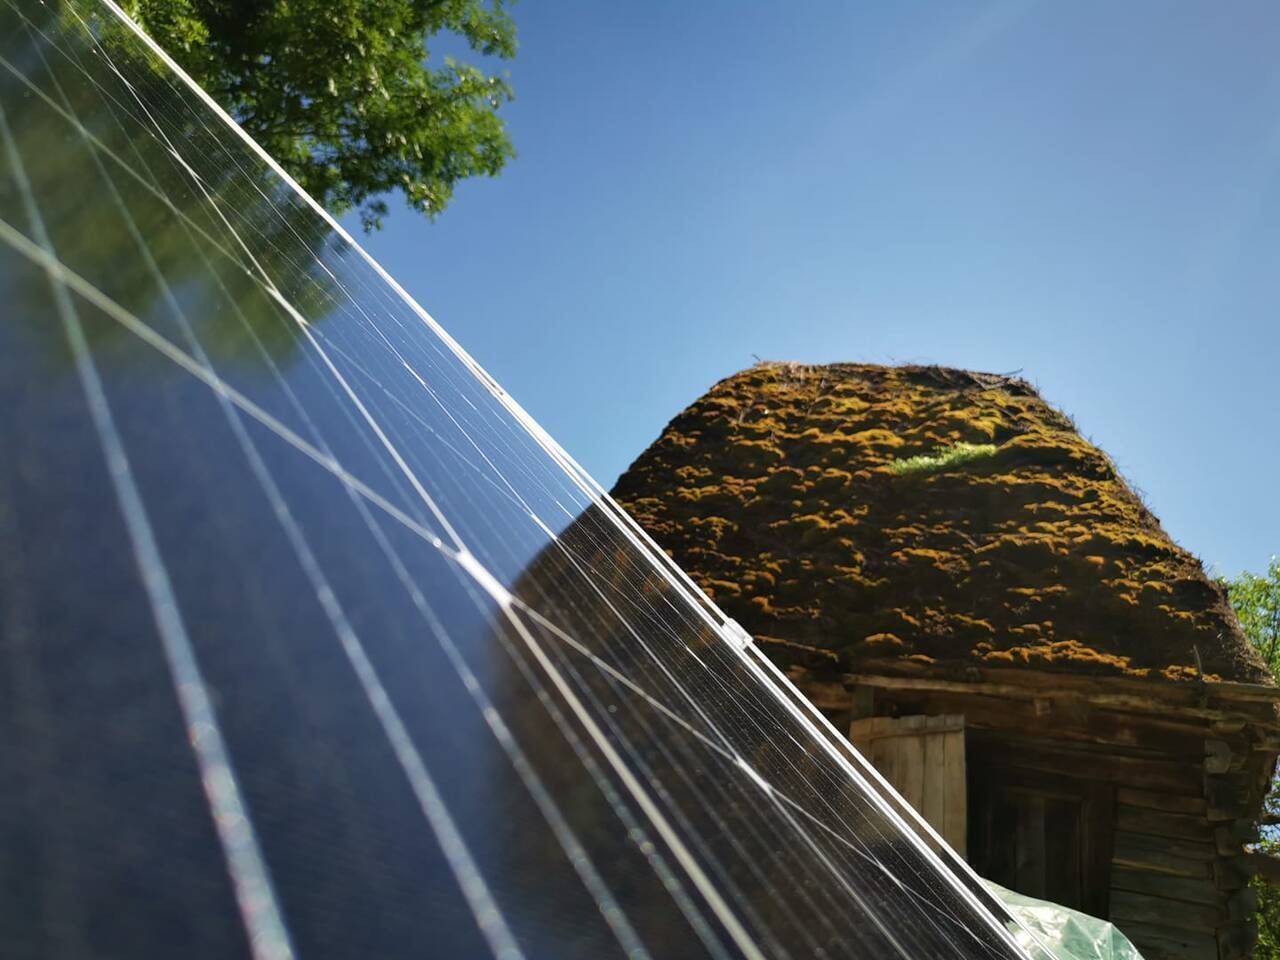 Sisteme fotovoltaice la case din Apuseni - sursa foto: Dumitru Chisalita, Facebook